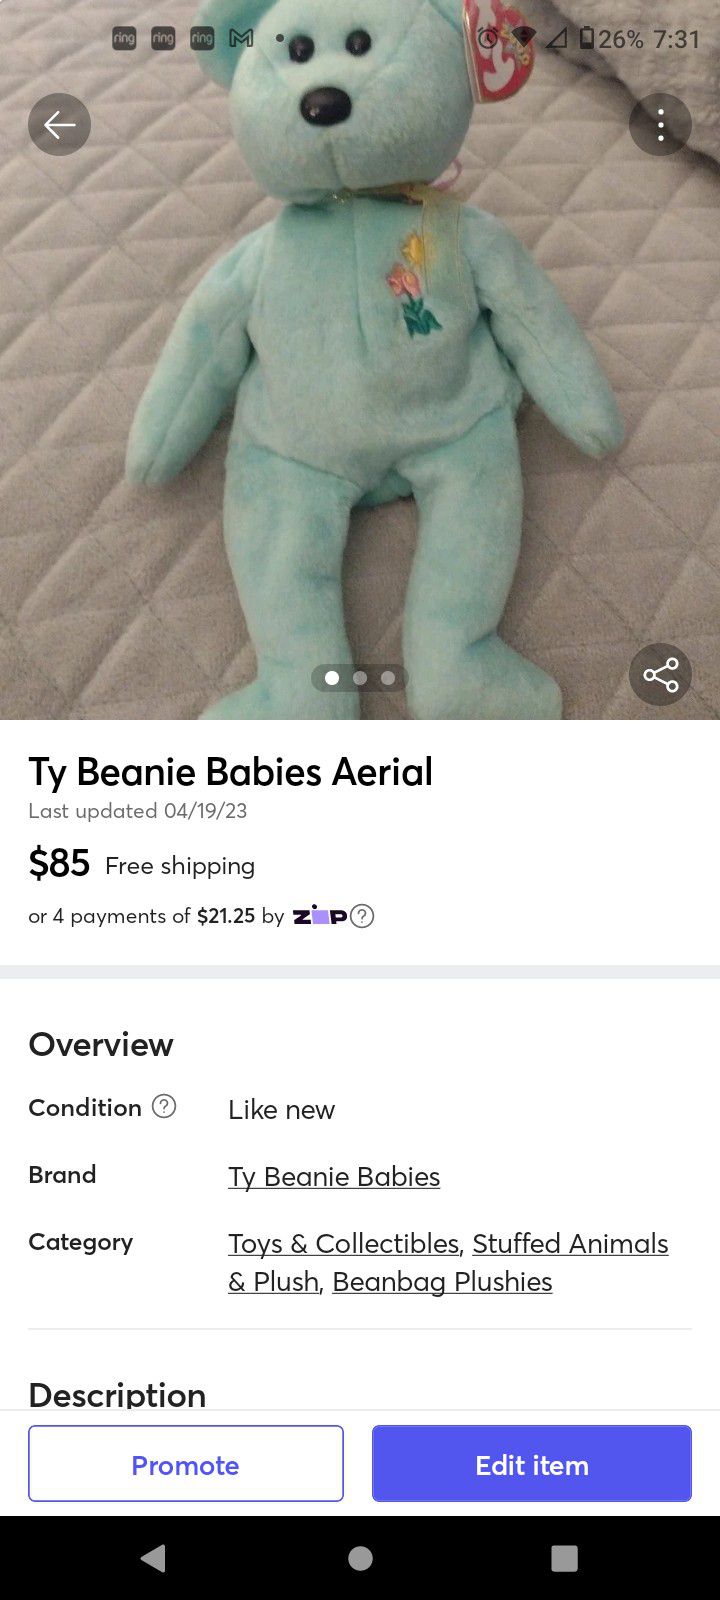 Beanie Babies Aerial